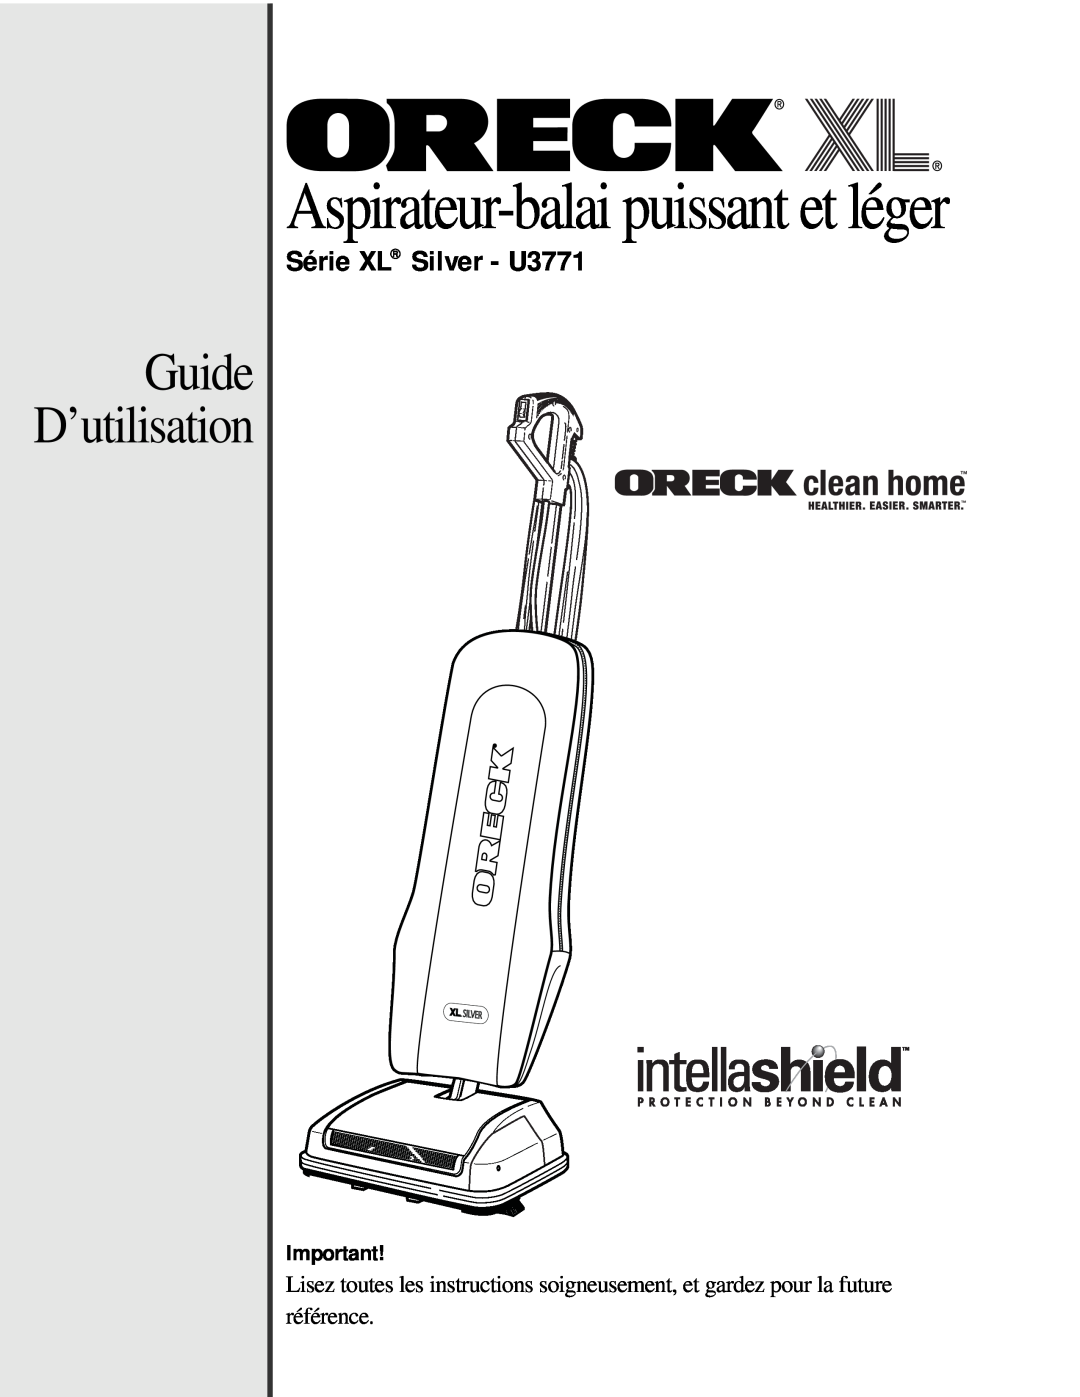 Oreck manual Guide D’utilisation, Aspirateur-balaipuissant et léger, Série XL Silver - U3771 